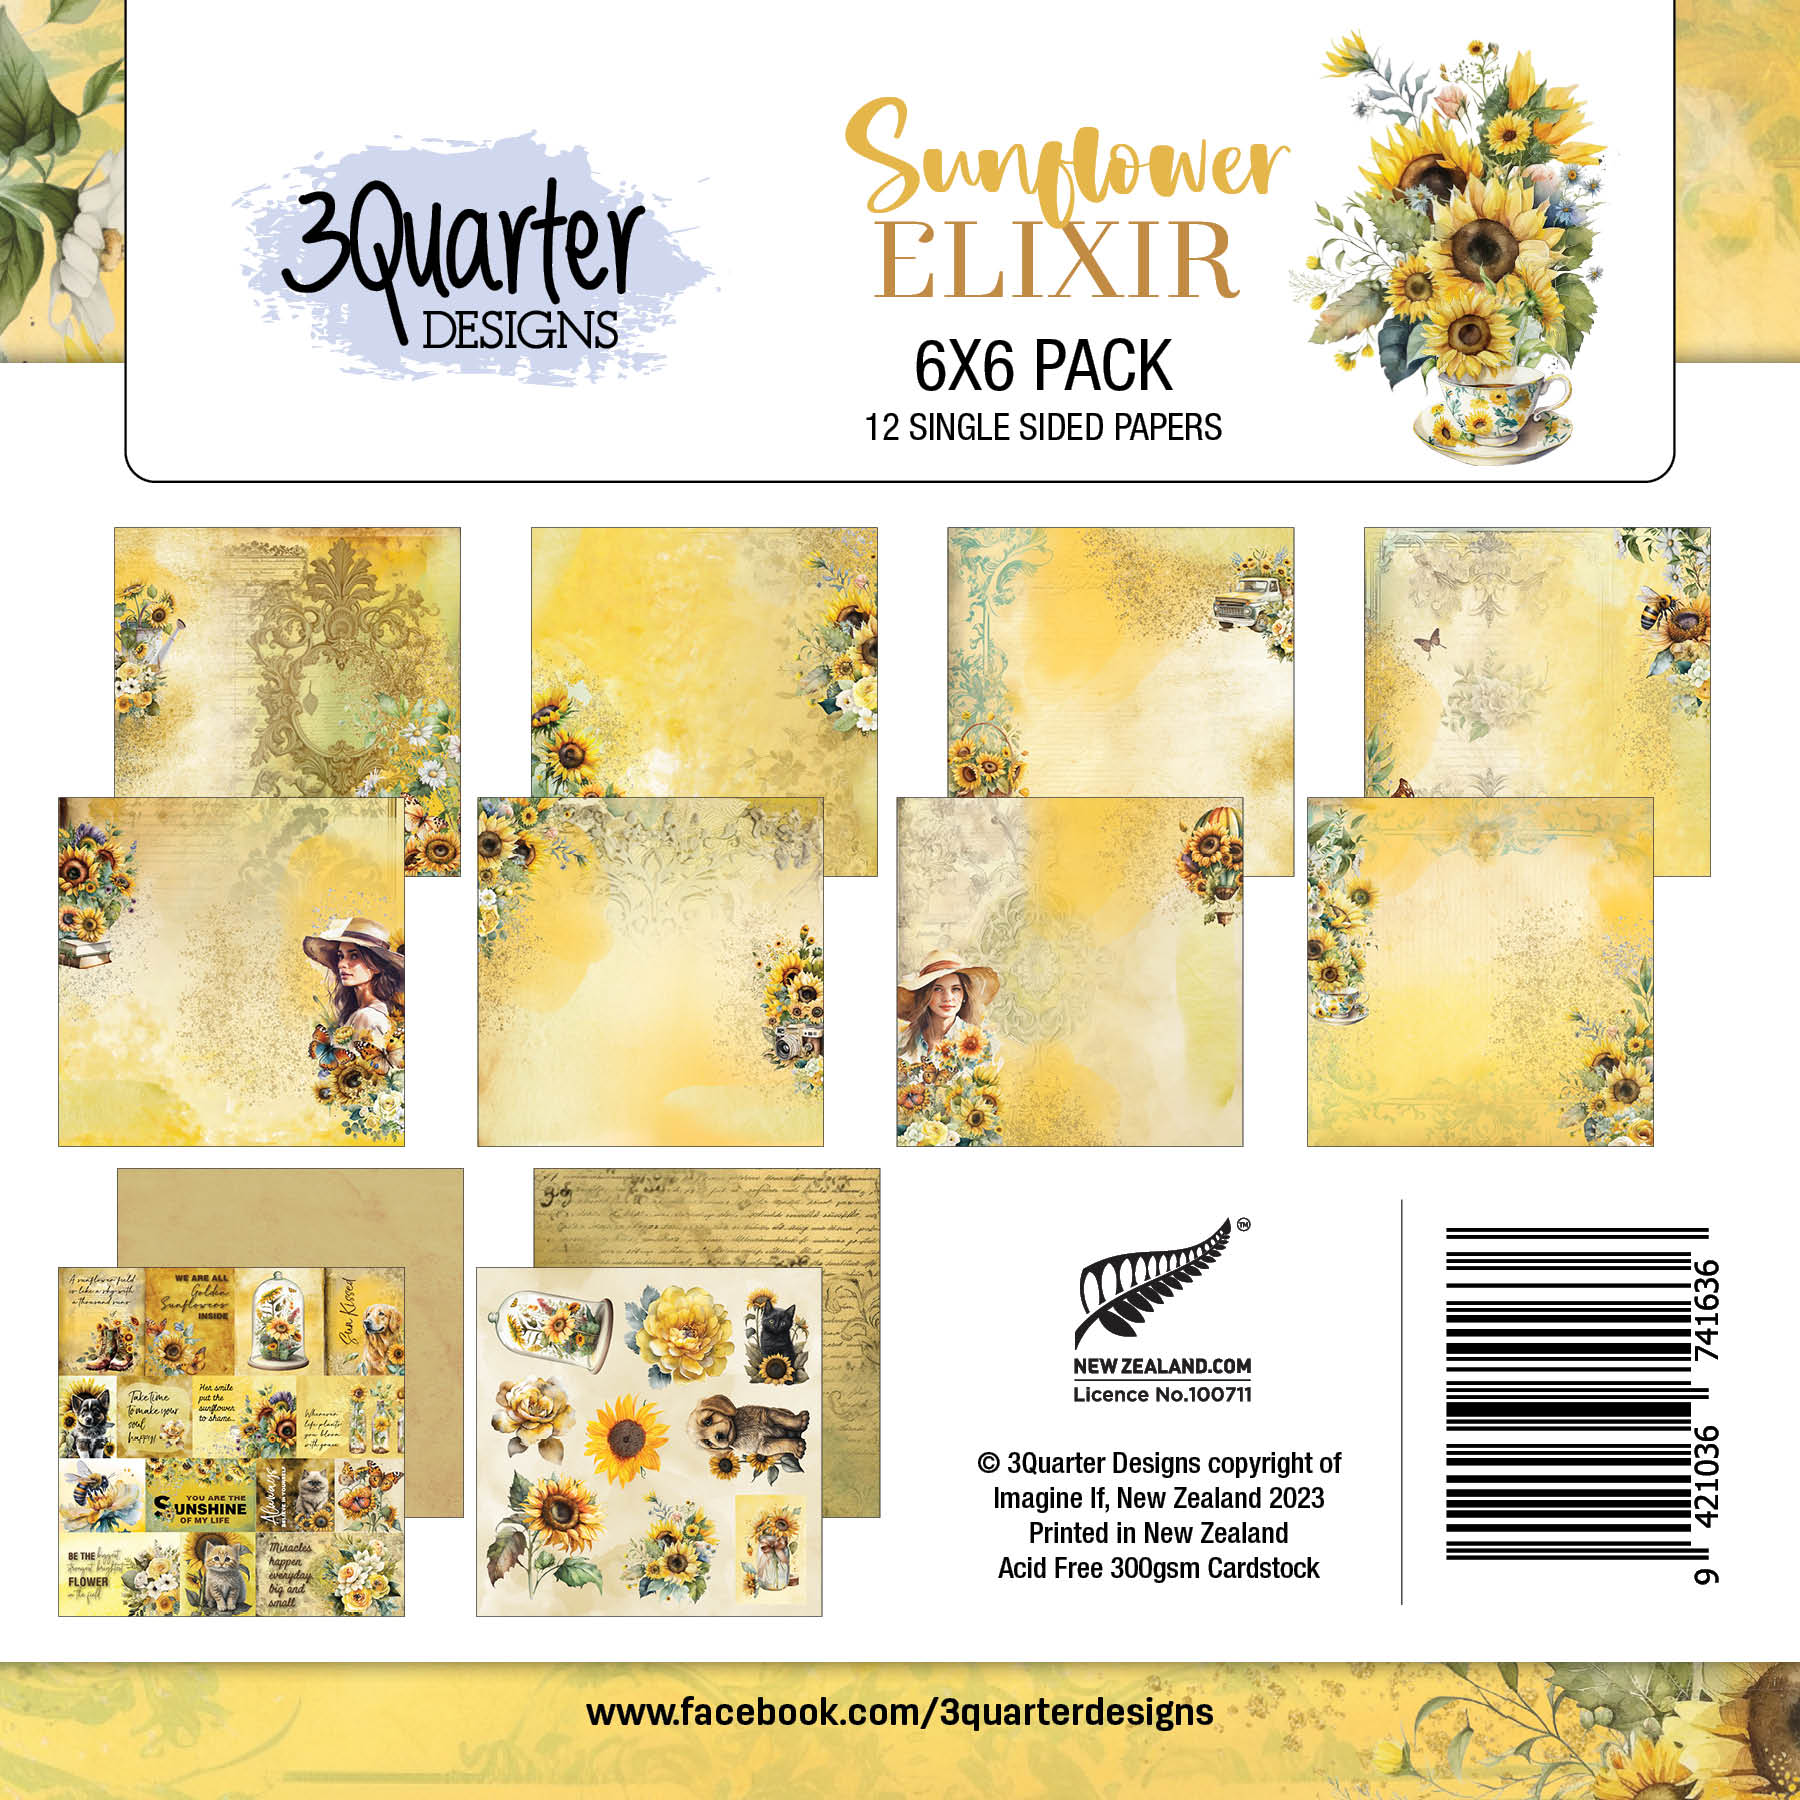 Sunflower Elixir 6x6 pack